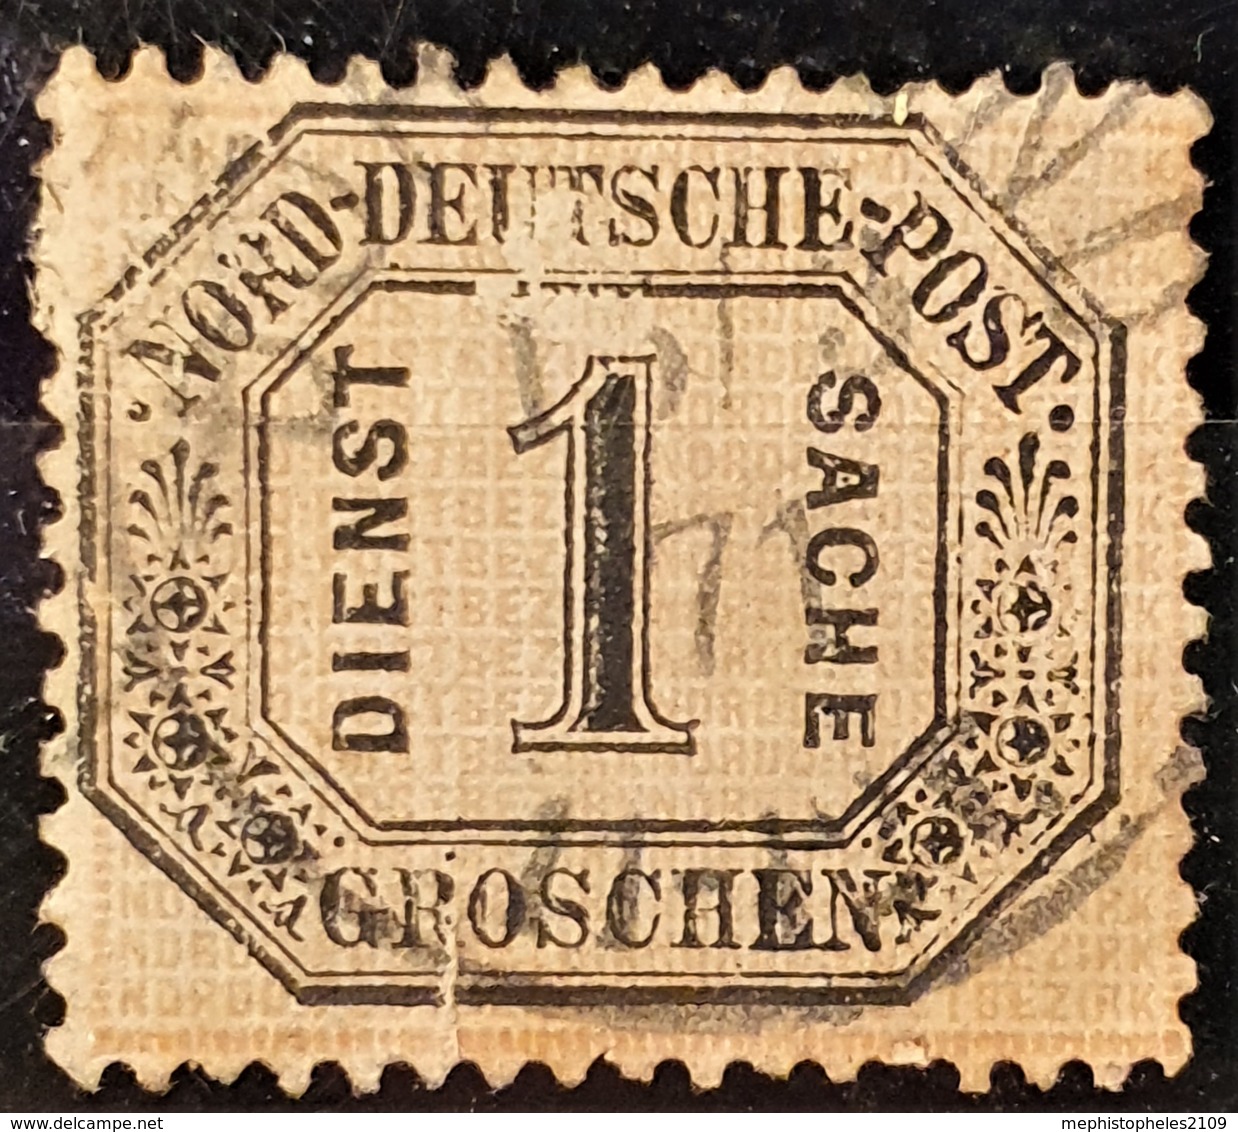 NORDDEUTSCHER POSTBEZIRK 1870 - Canceled - Mi 6 - Dienstmarke 1 Kr - Used